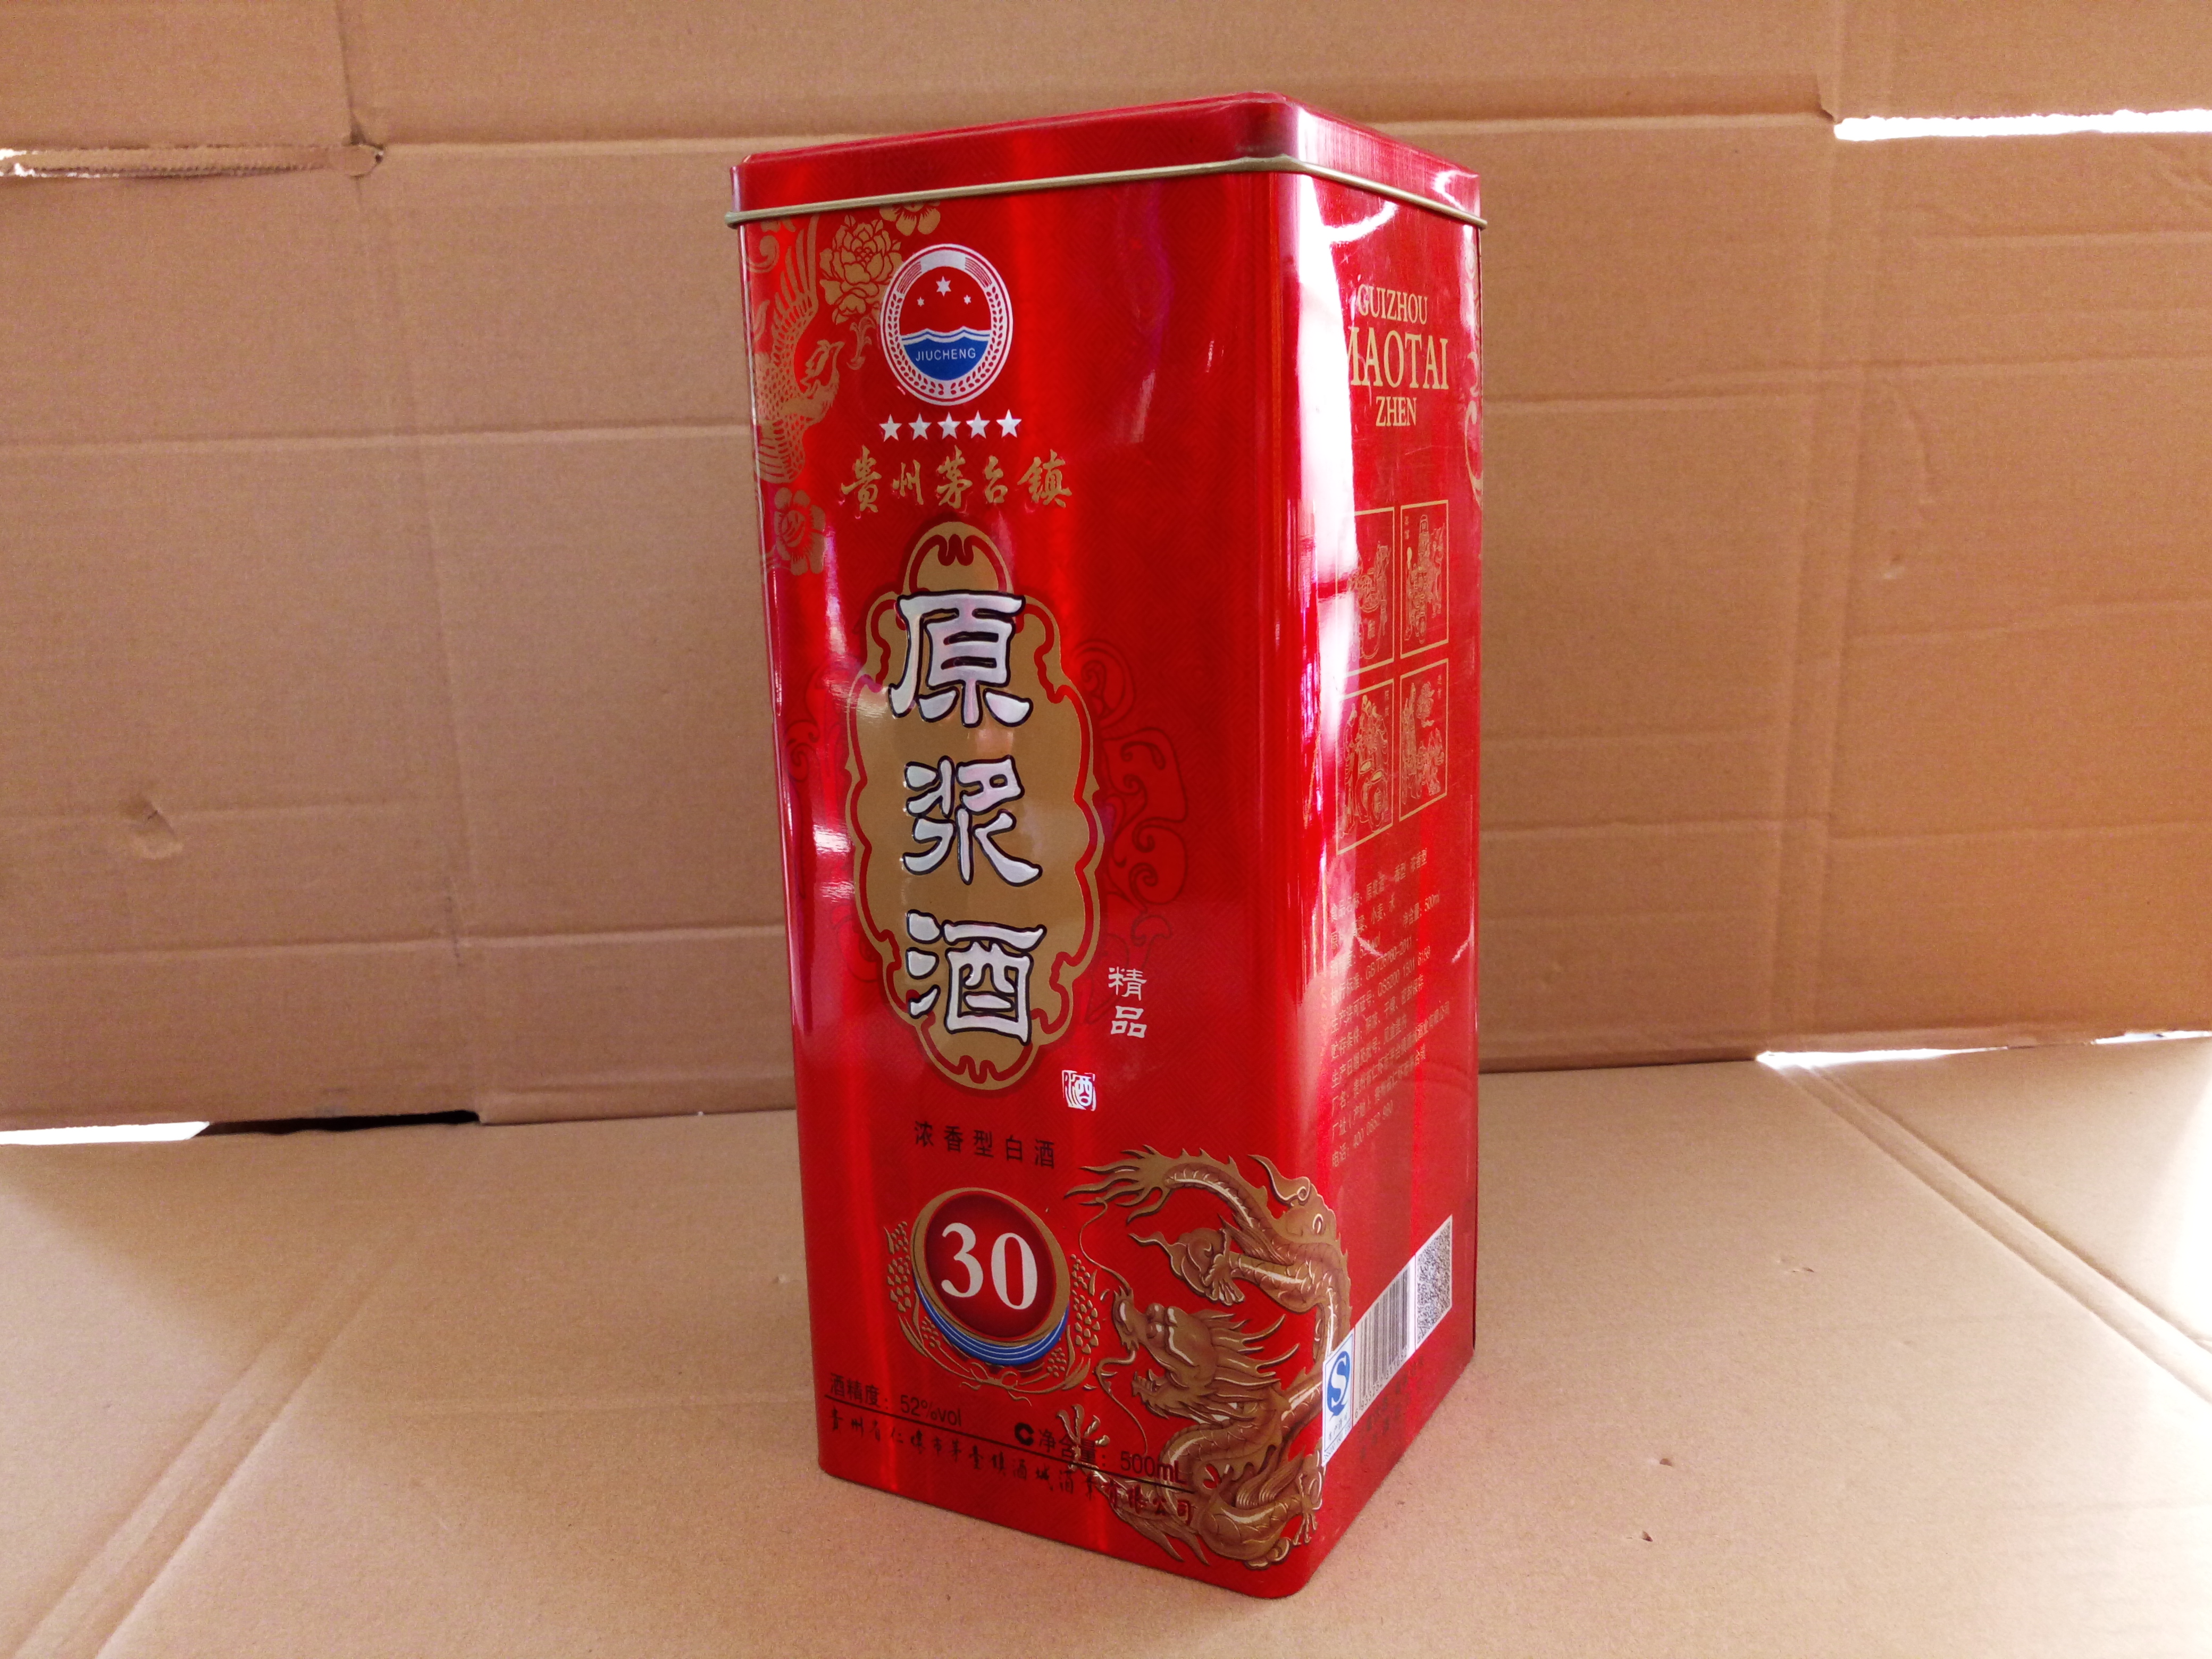 聊城市白酒铁盒包装供应,红酒木盒厂家厂家供应用于可定制的白酒铁盒包装供应,红酒木盒厂家